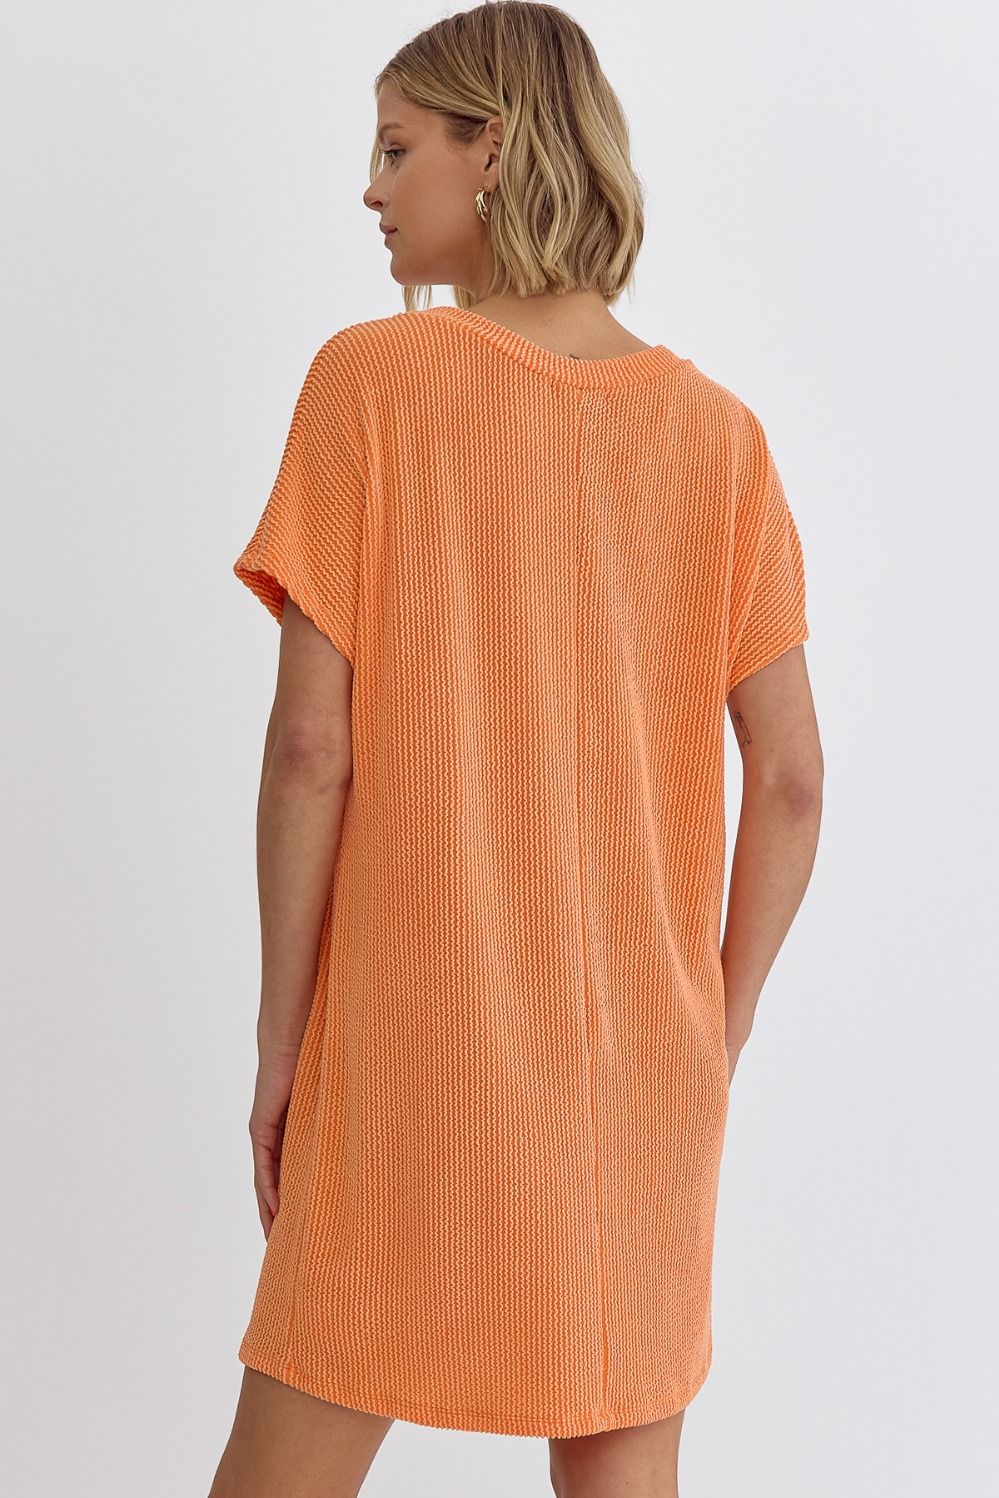 Kick Back Ribbed Dress in Orange